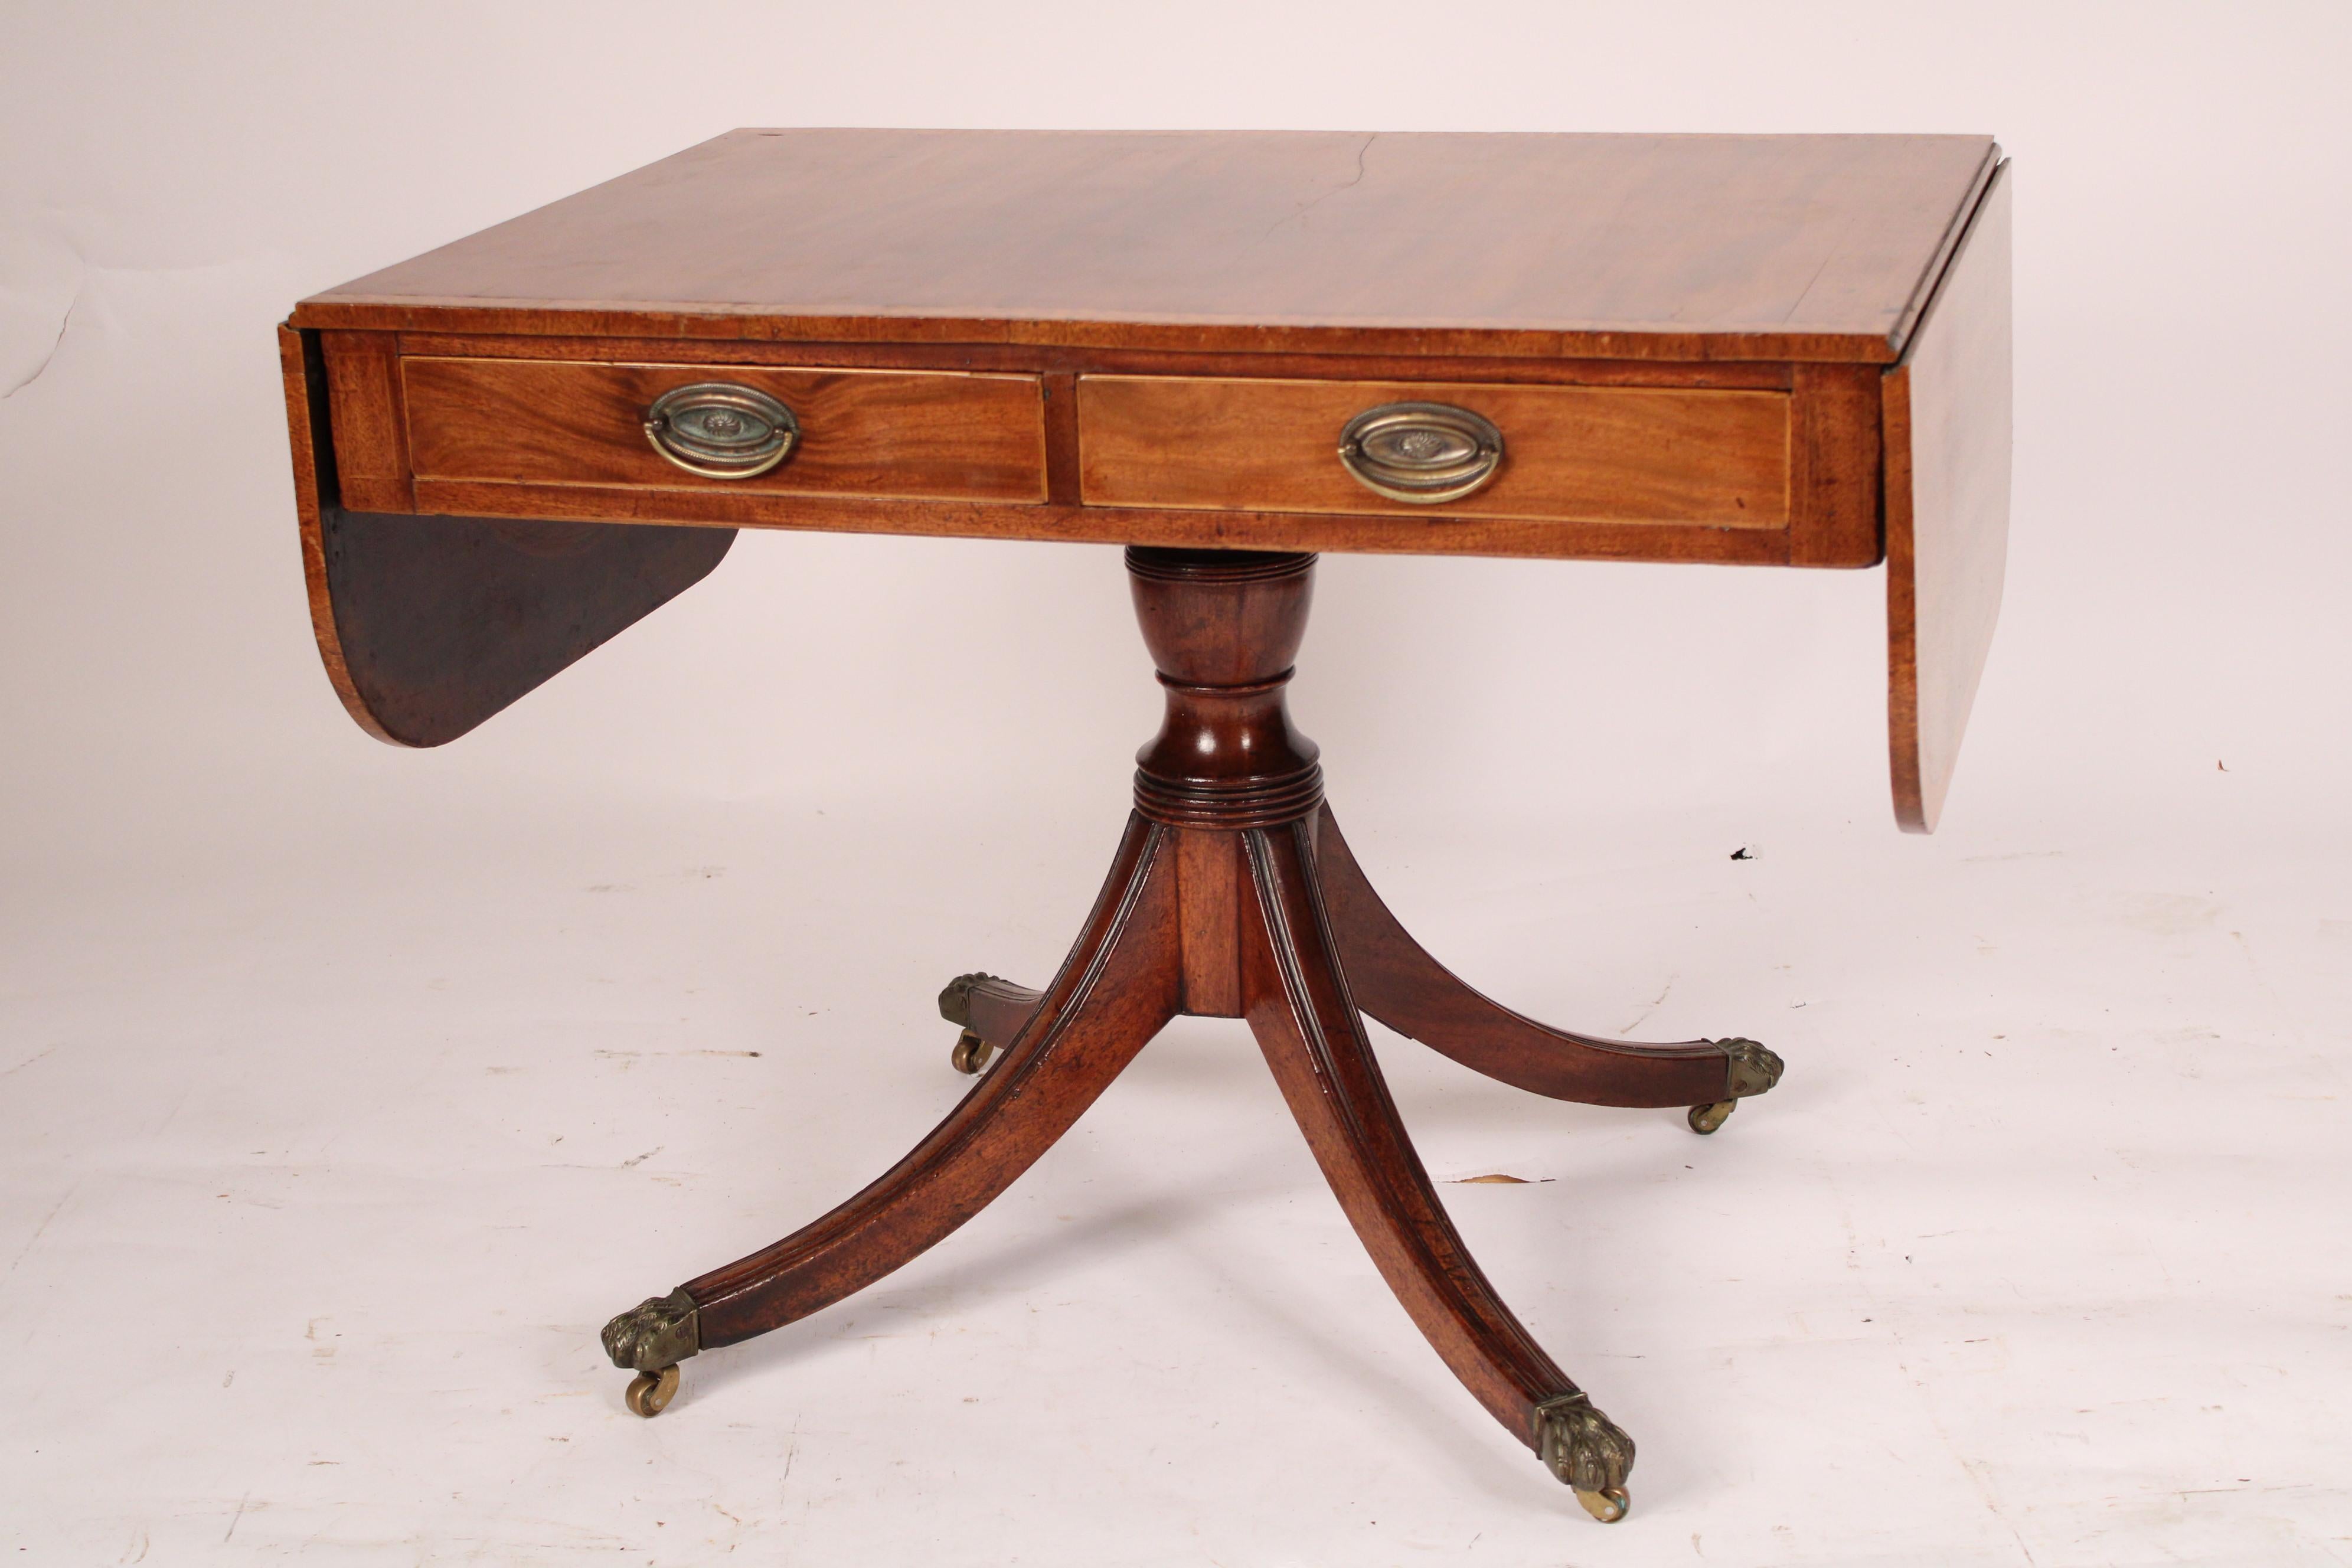 19th Century English Regency Mahogany Sofa Table For Sale